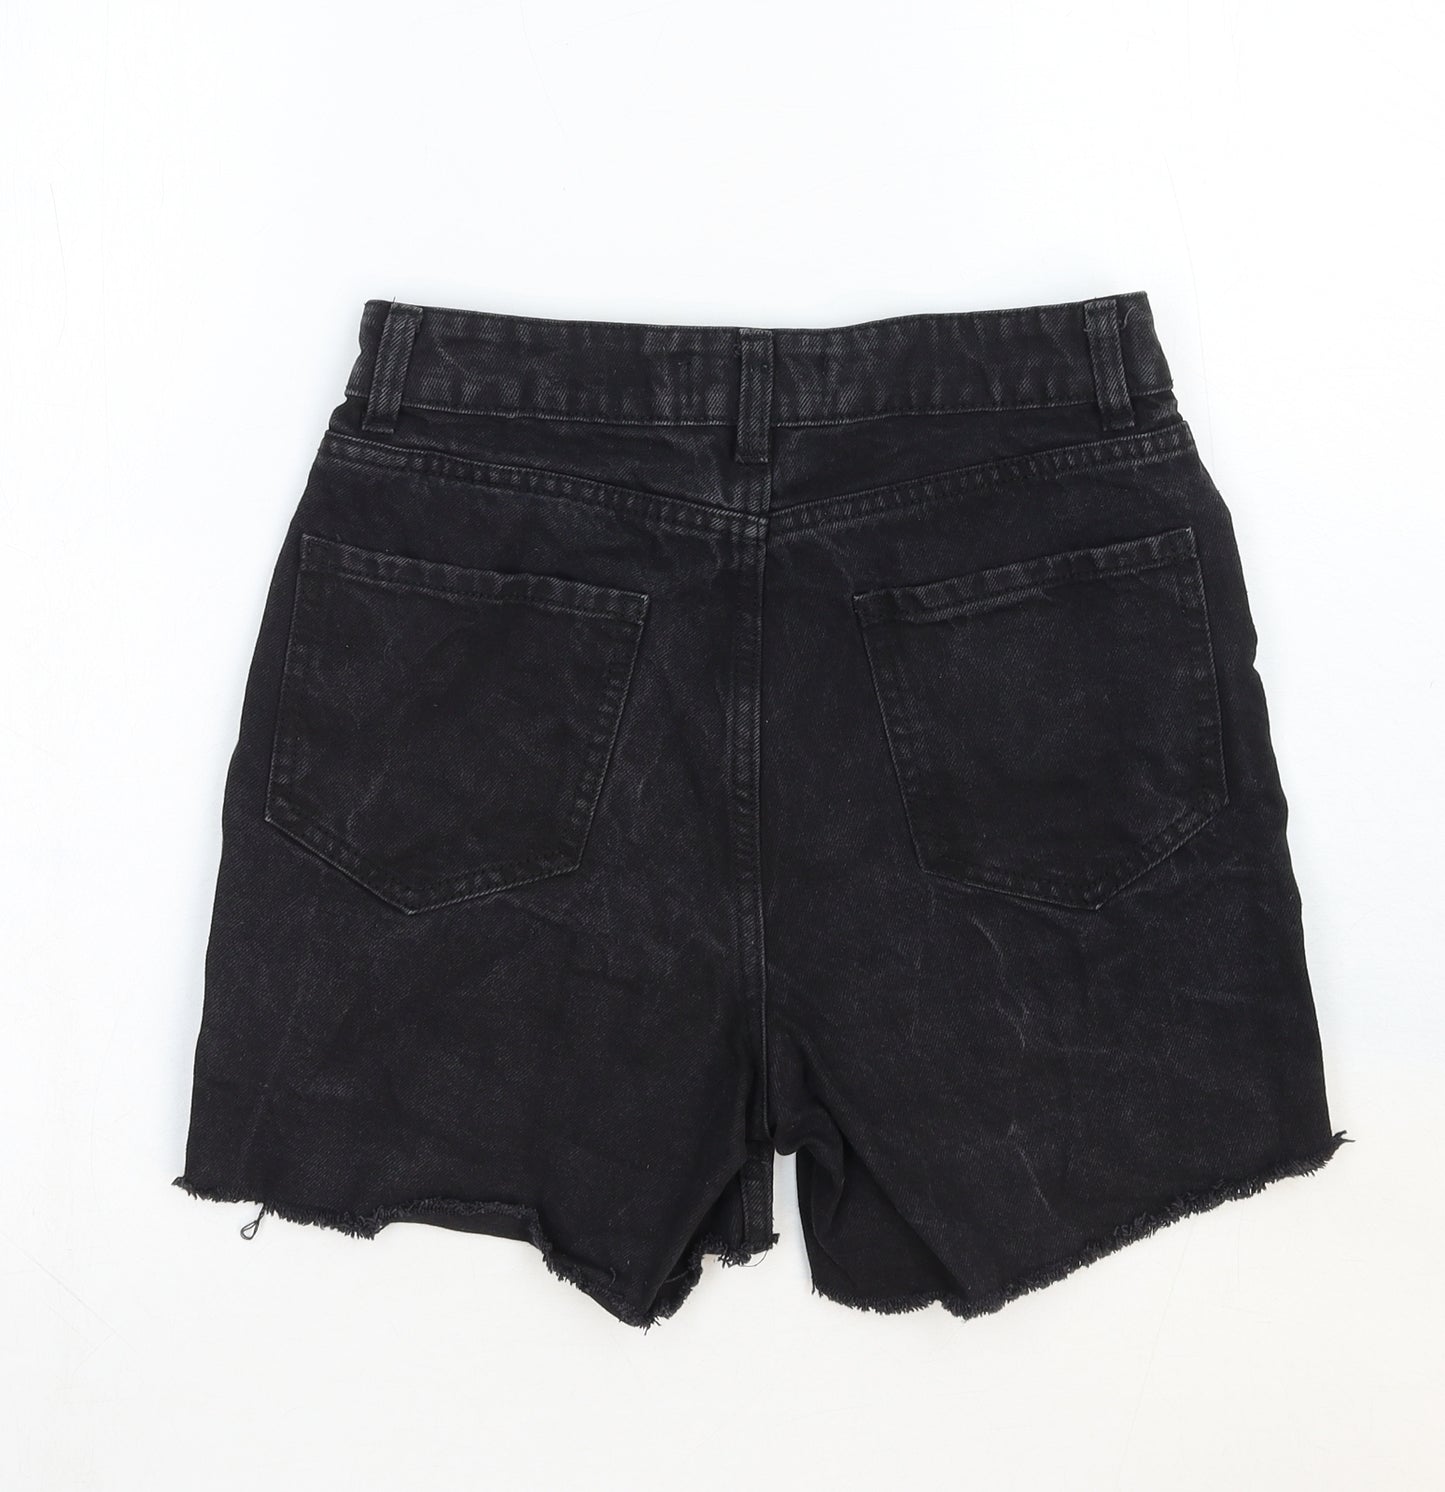 Denim & Co. Womens Black Cotton Boyfriend Shorts Size 6 Regular Zip